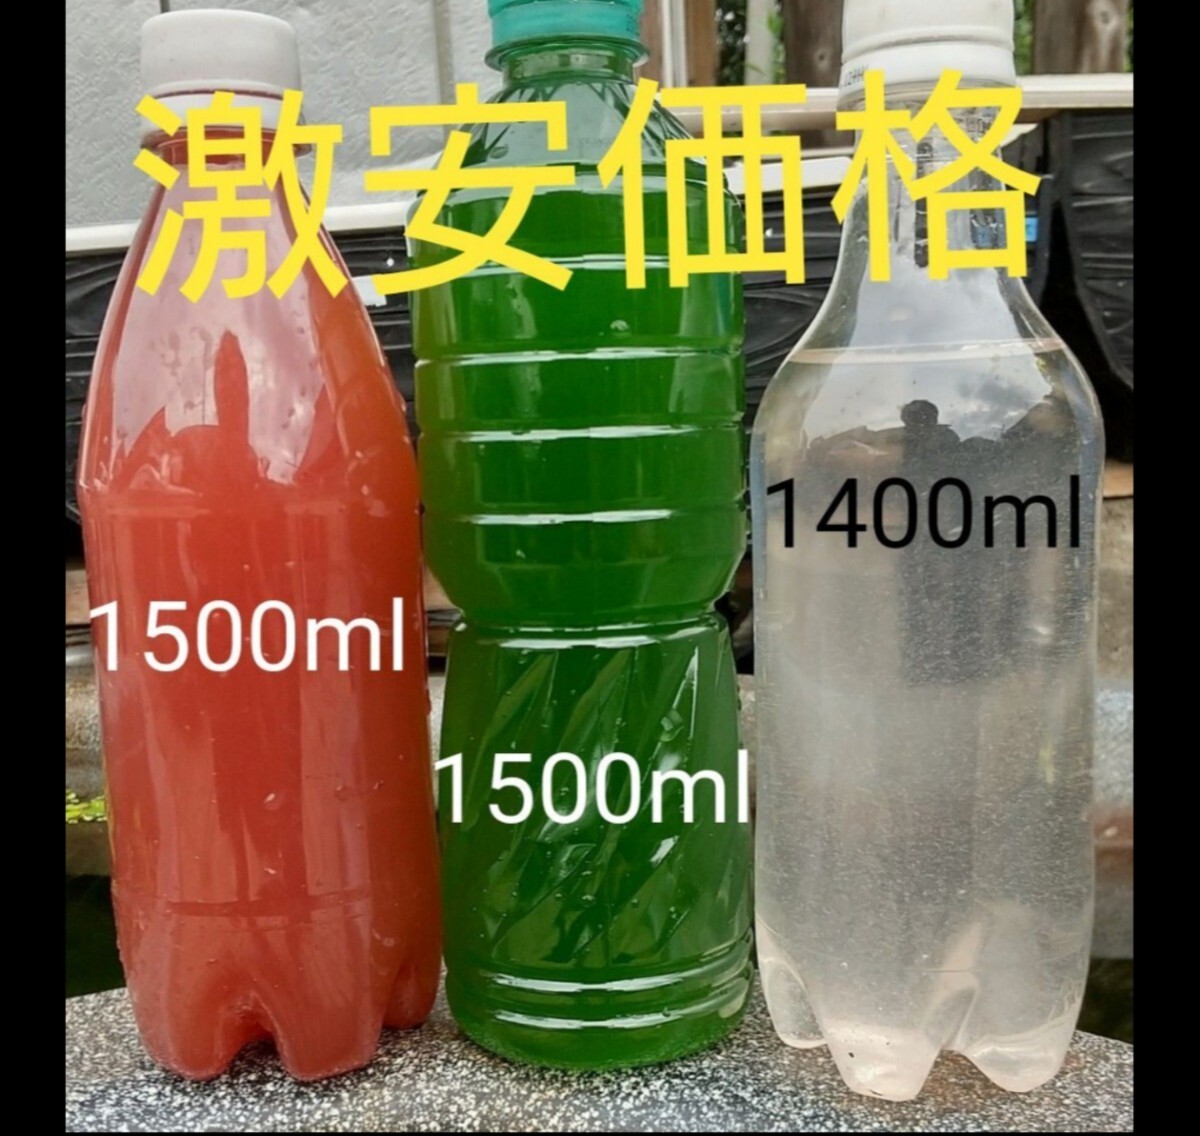 PSB( свет соединение маленький .)1500ml& натуральный зеленый вода ( вид вода. синий вода )1500ml& слон обод si1400ml.